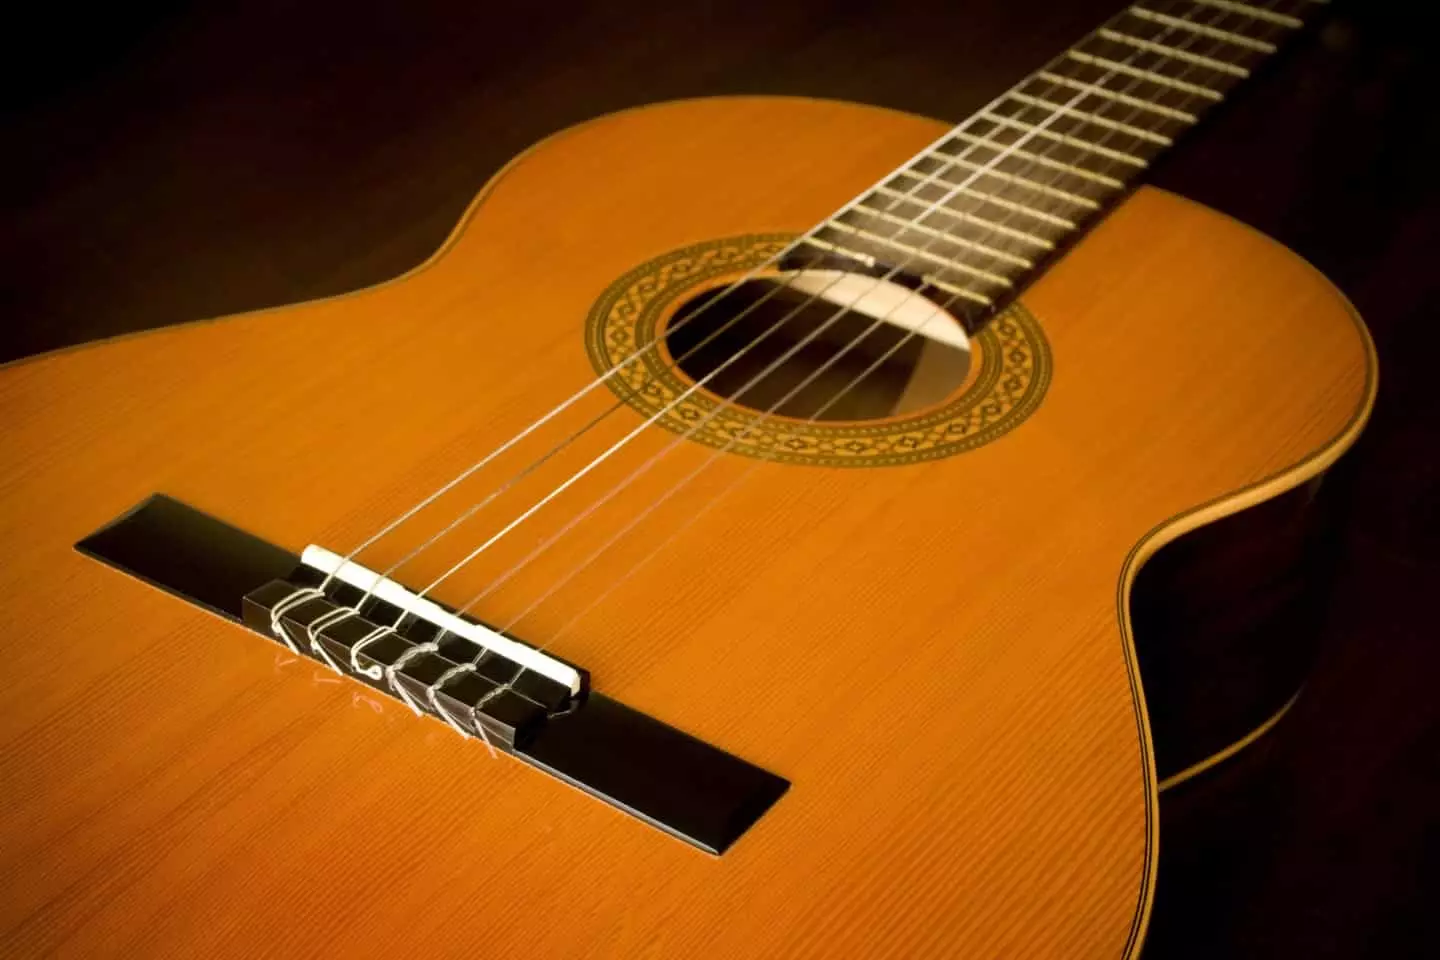 acoustic ဂစ်တာအတွက်နိုင်လွန်ကြိုး - ဘယ်လိုဆွဲထုတ်ရမလဲ။ ဘာဒရှဏကြိုးတွေကပိုကောင်းတာလဲ။